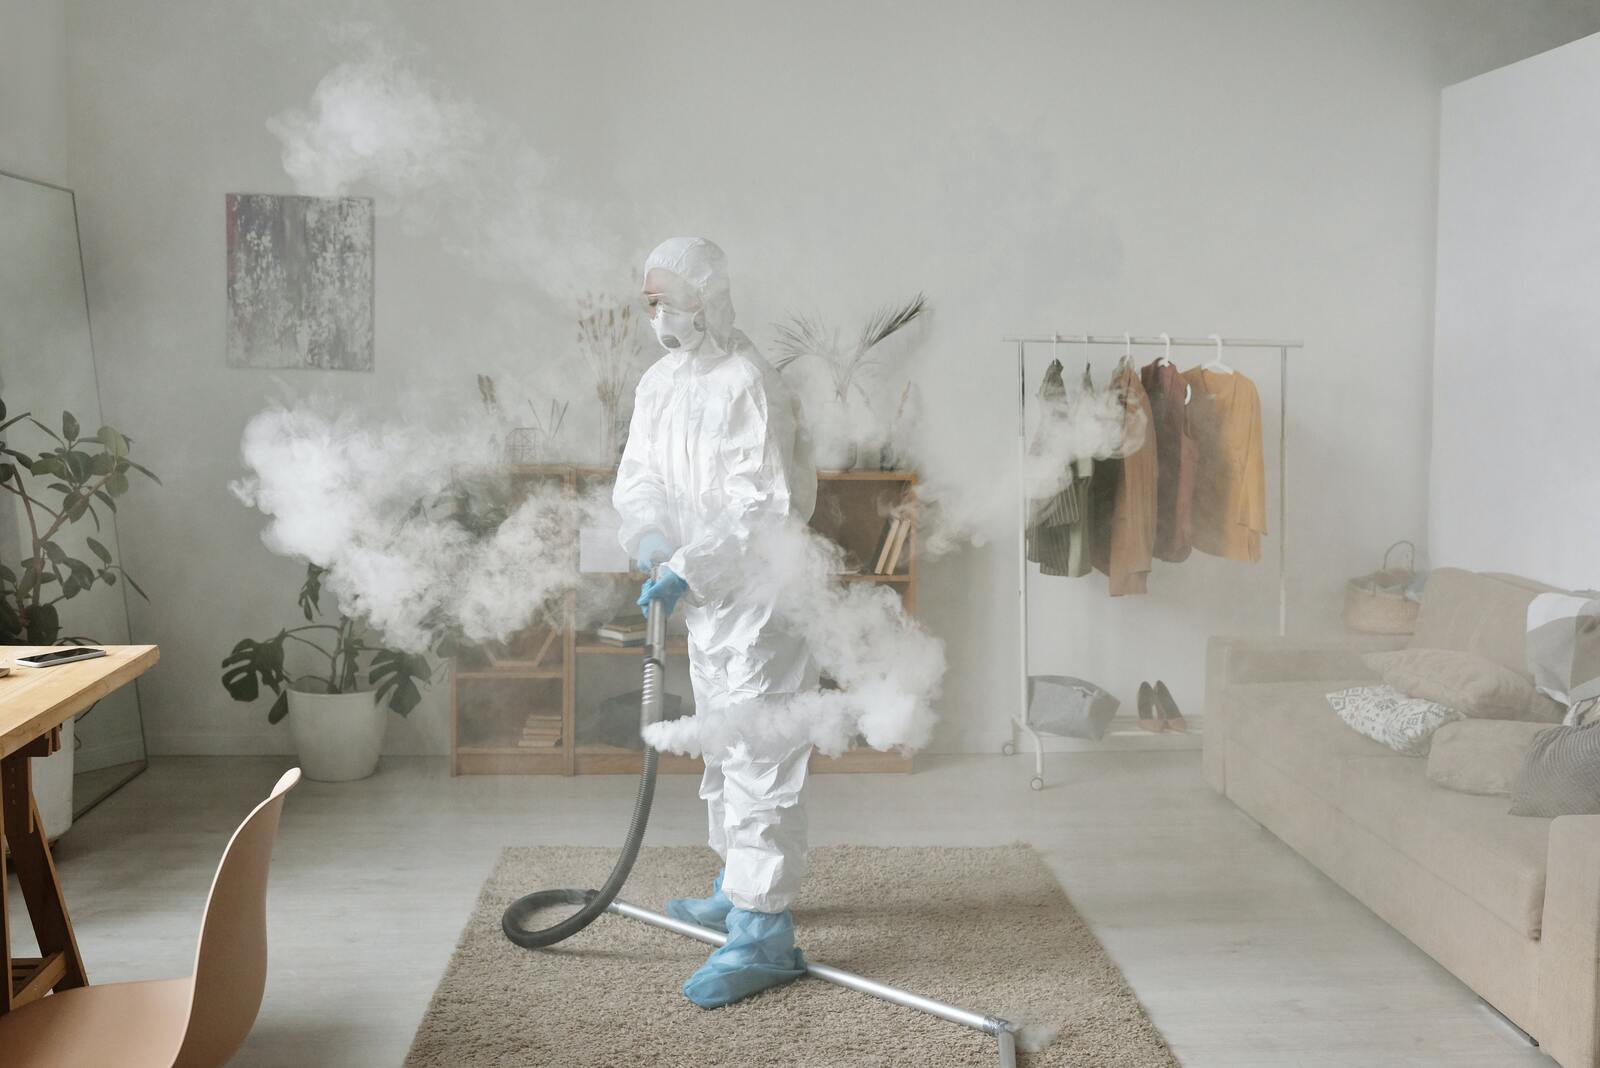 Frau in Chemikalienschutzkleidung, die in einer Wohnung Chemikalien versprüht